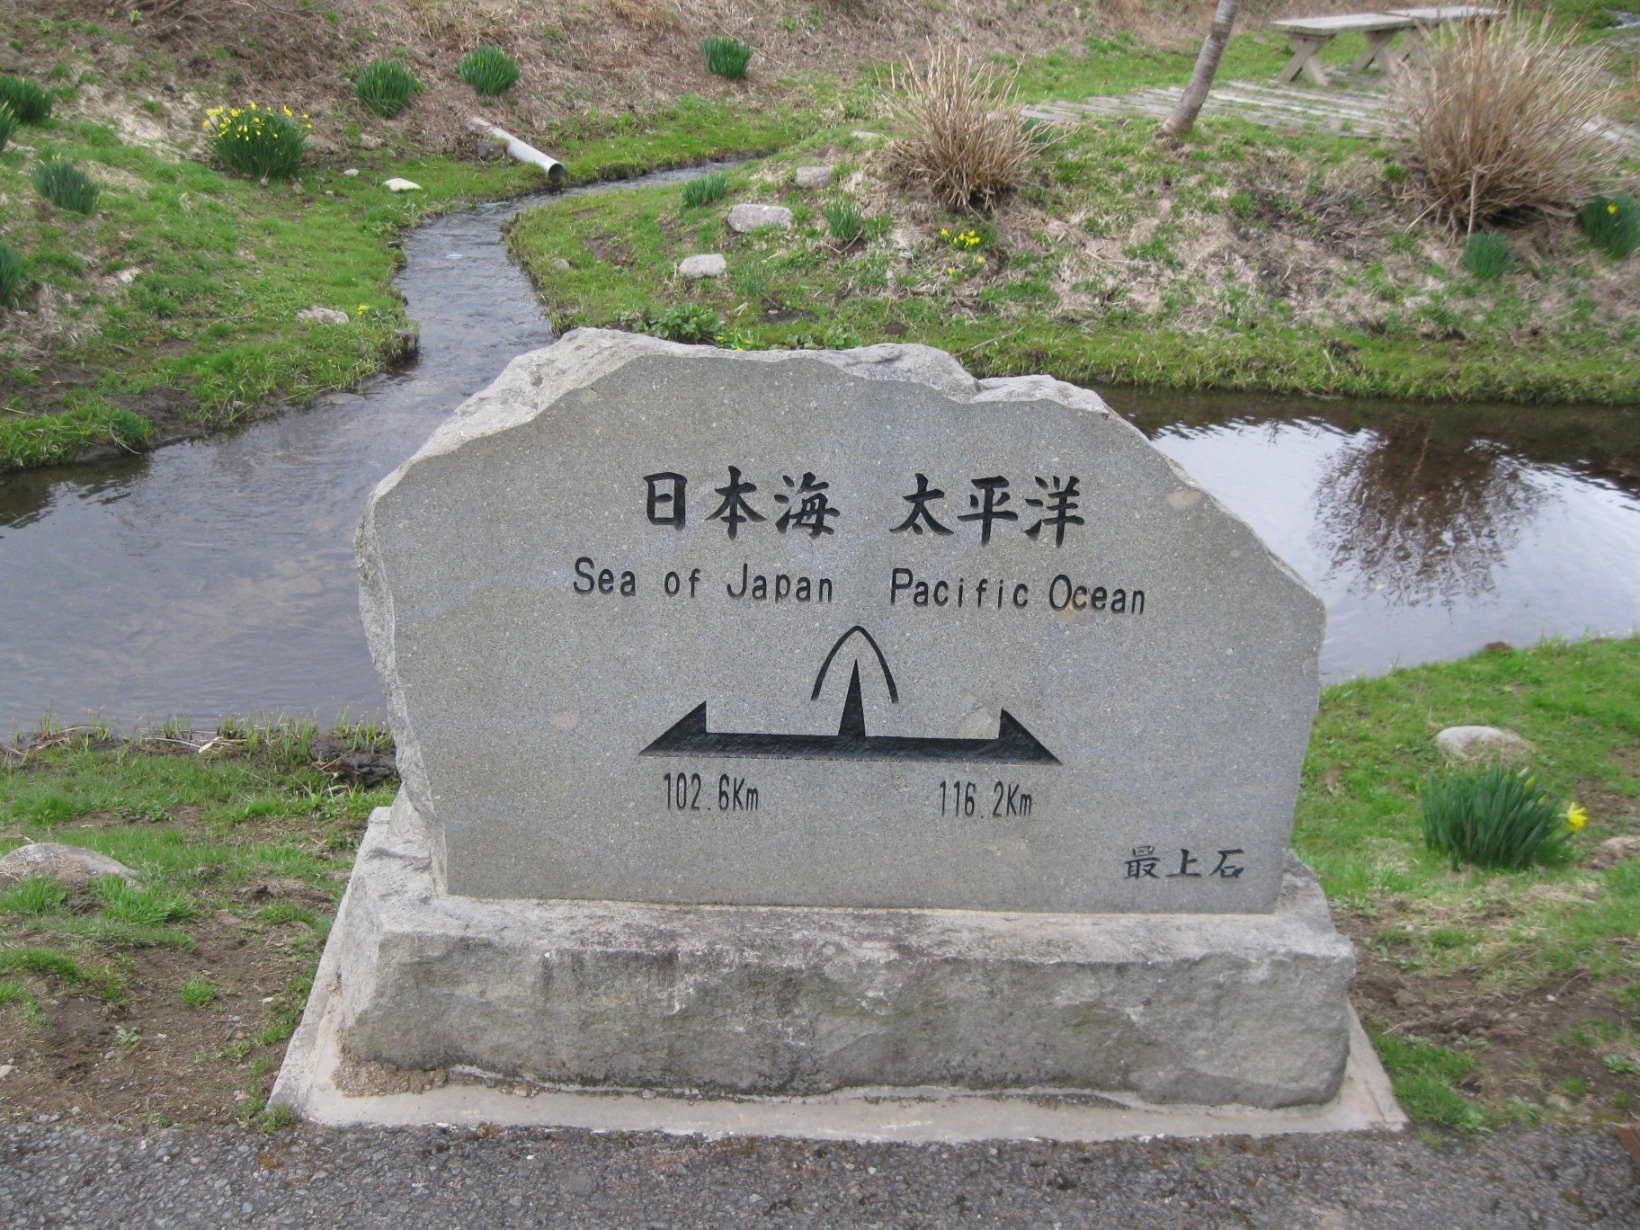 堺田駅前で見つけた、ここを境に水は日本海側と太平洋側に分かれて流れていく、分水嶺の碑